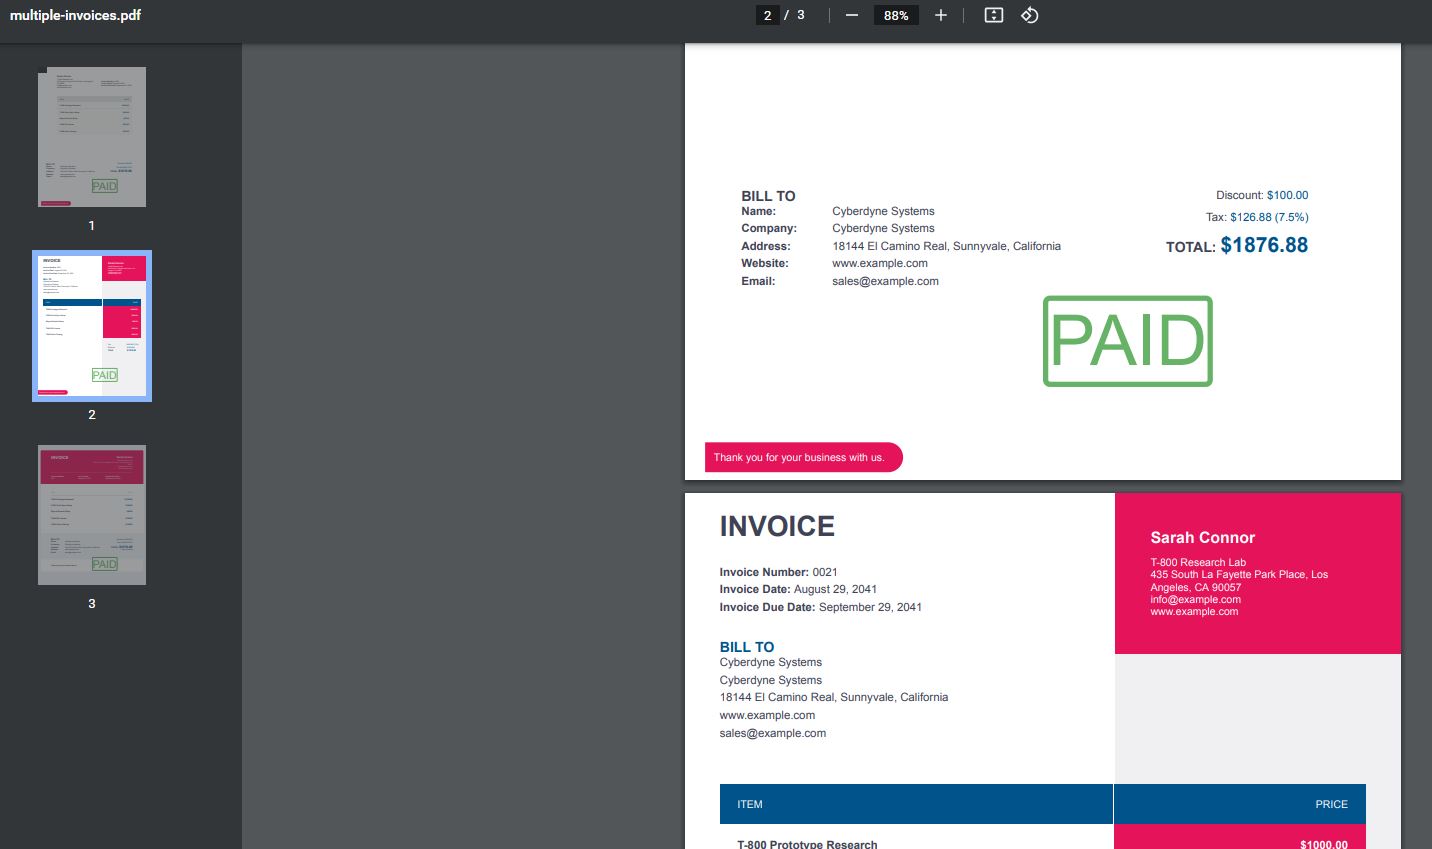 Input to Split PDF by Page